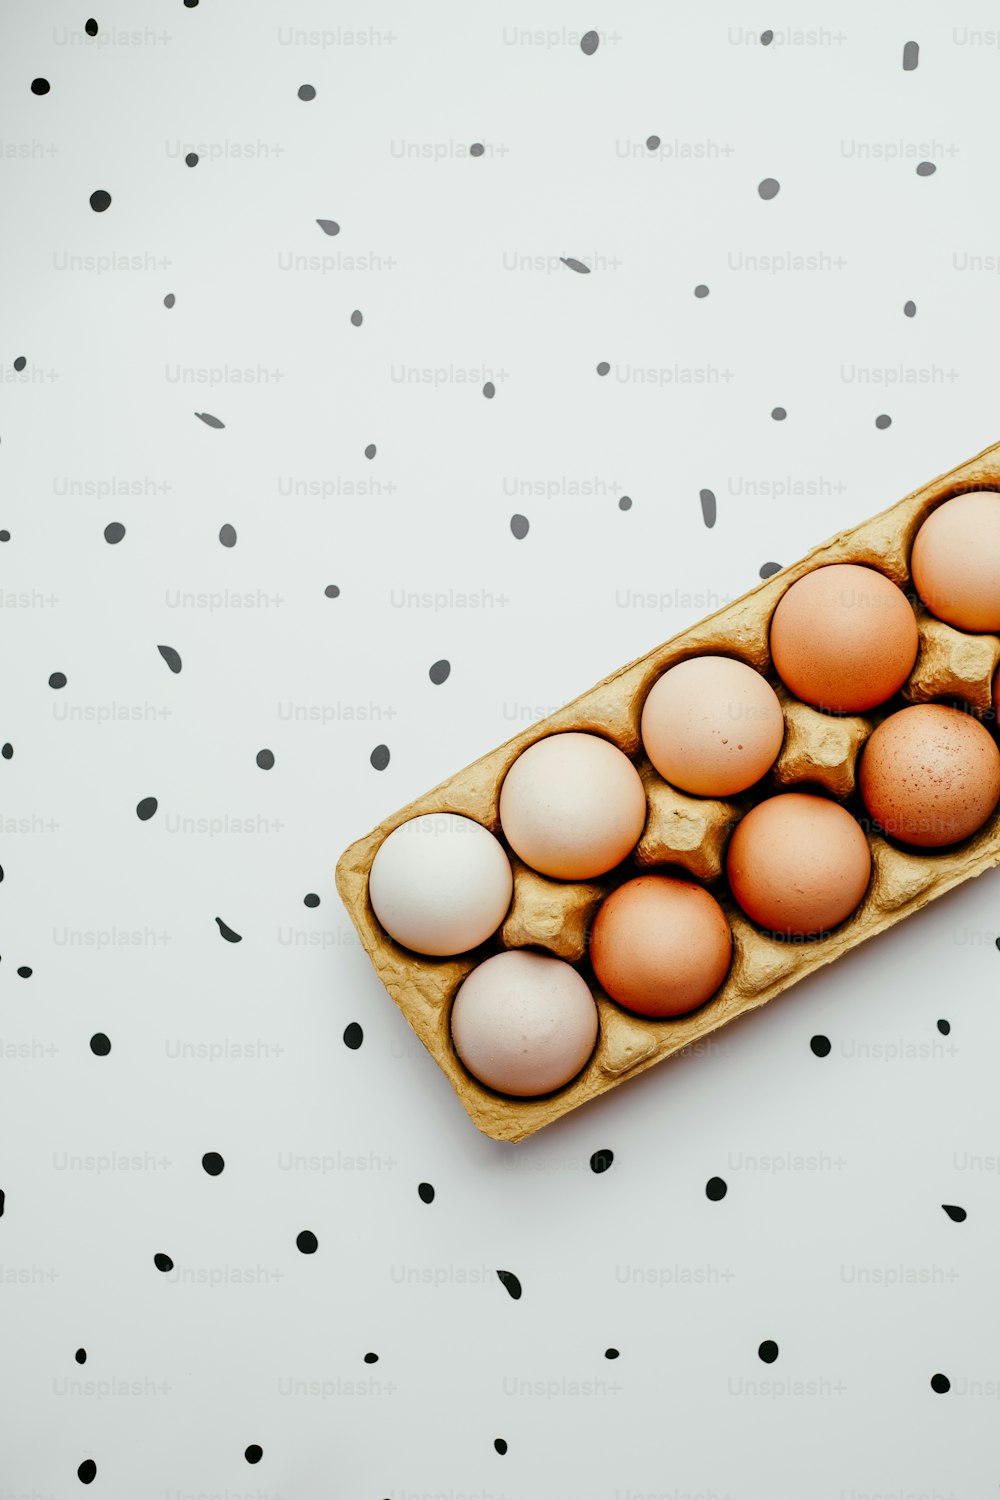 테이블 위에 놓인 계란 상자